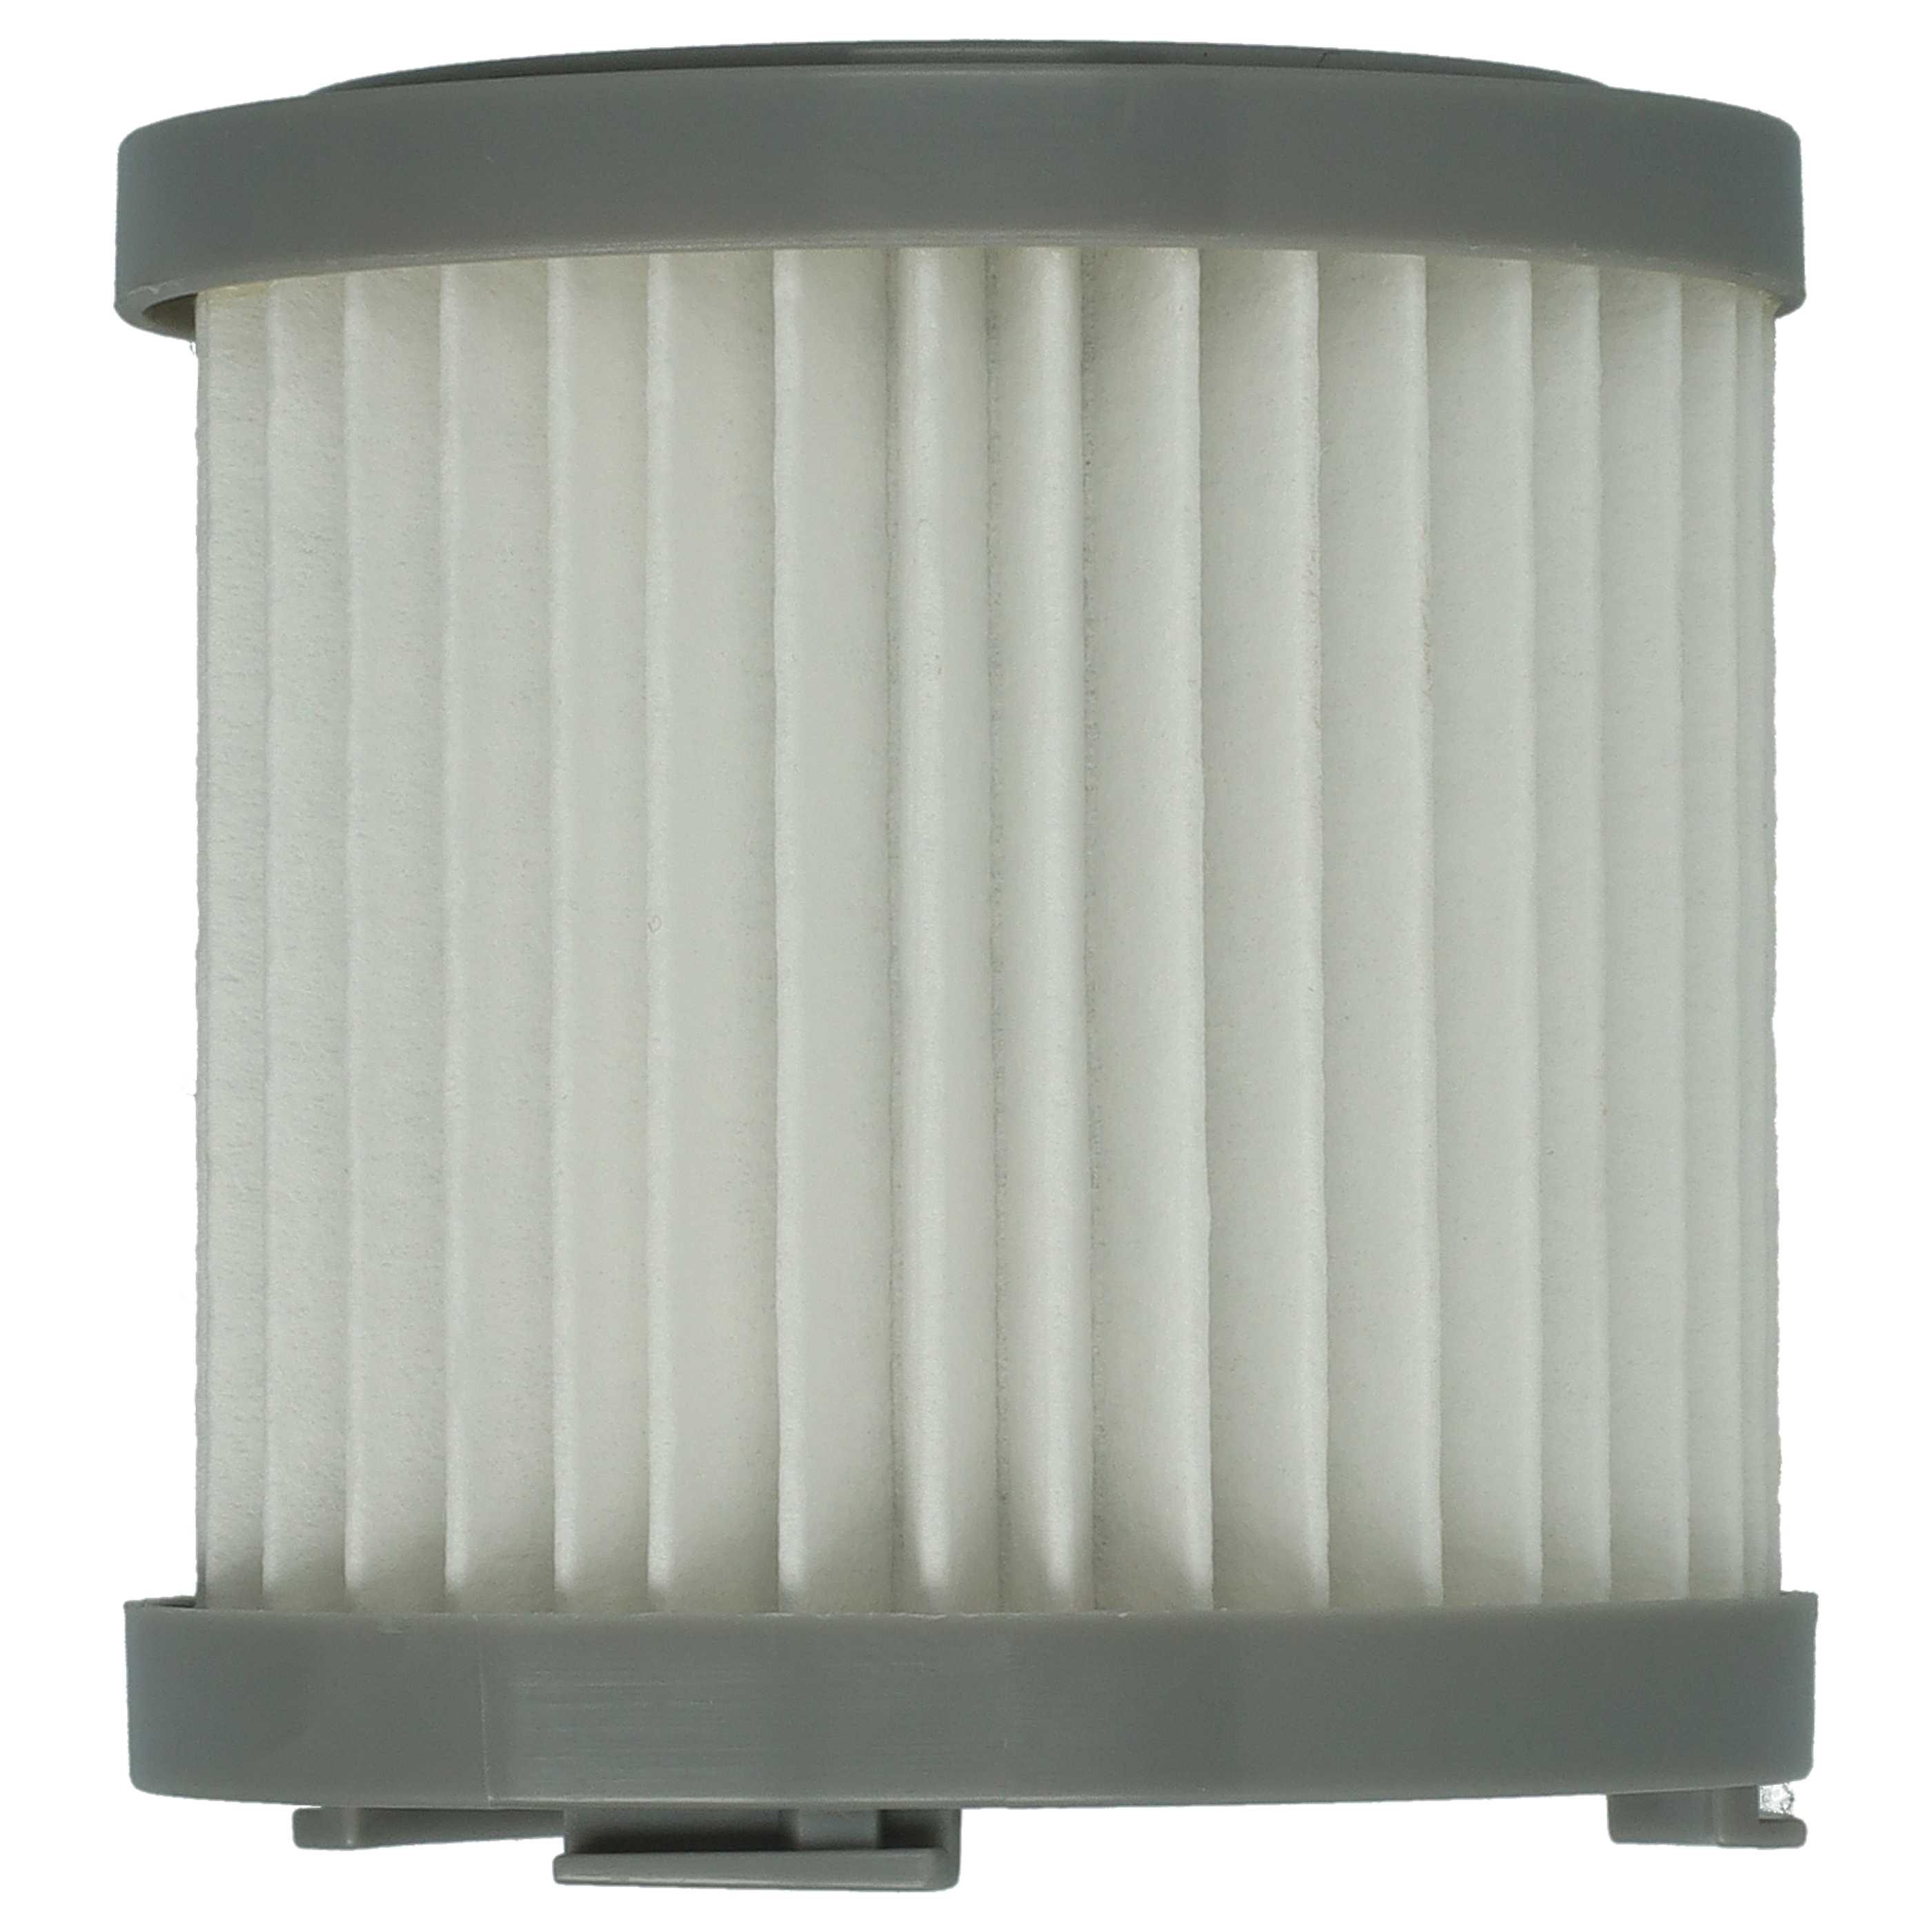 Filtre remplace AEG 4055453288 pour aspirateur - filtre HEPA